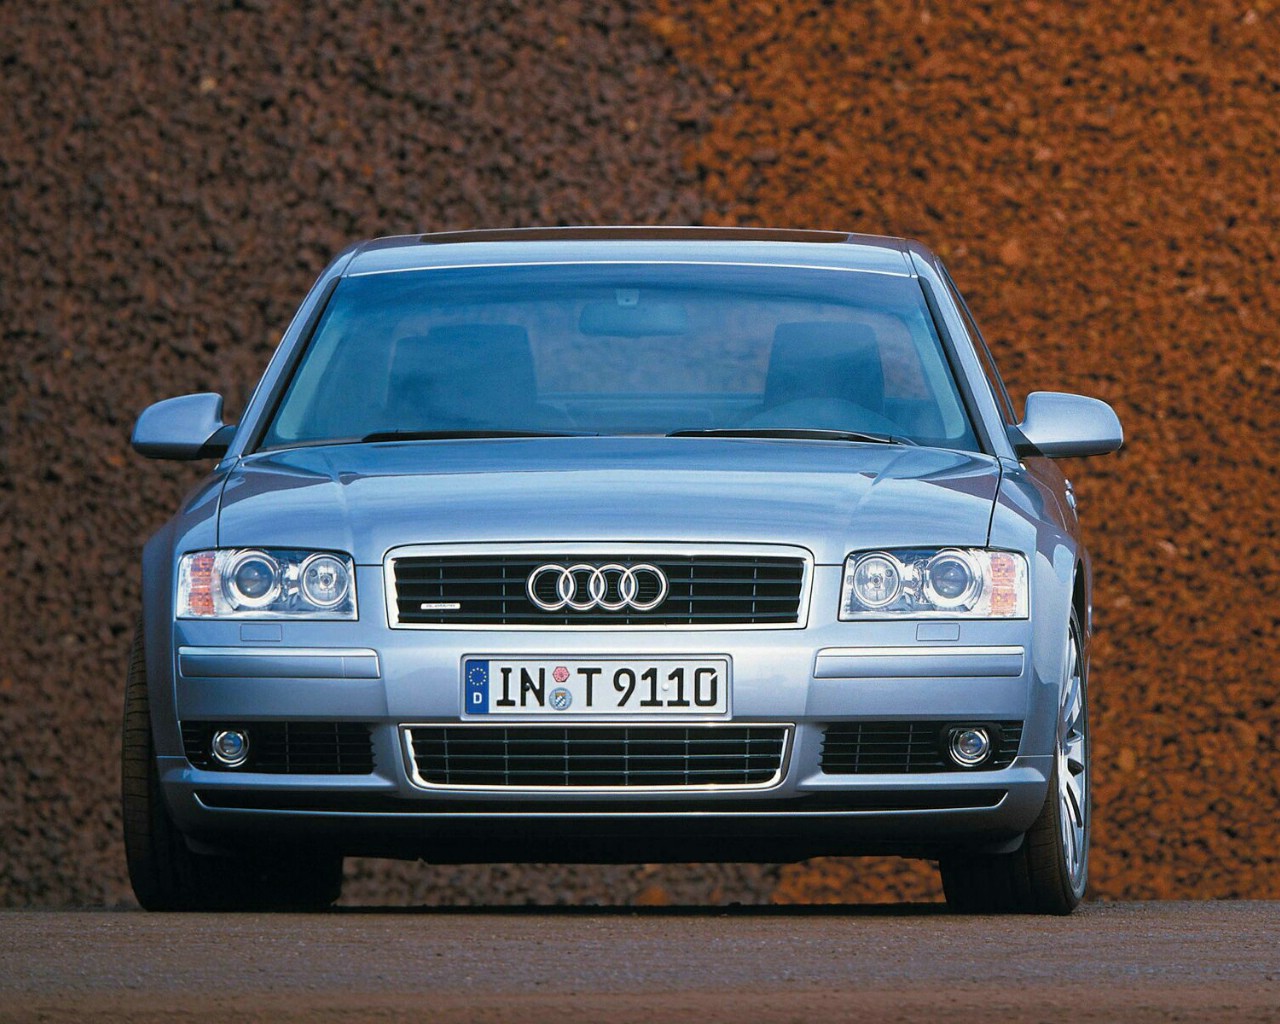 壁纸1280x1024Audi奥迪A8专辑壁纸 Audi奥迪A8壁纸壁纸 Audi奥迪A8壁纸图片 Audi奥迪A8壁纸素材 汽车壁纸 汽车图库 汽车图片素材桌面壁纸